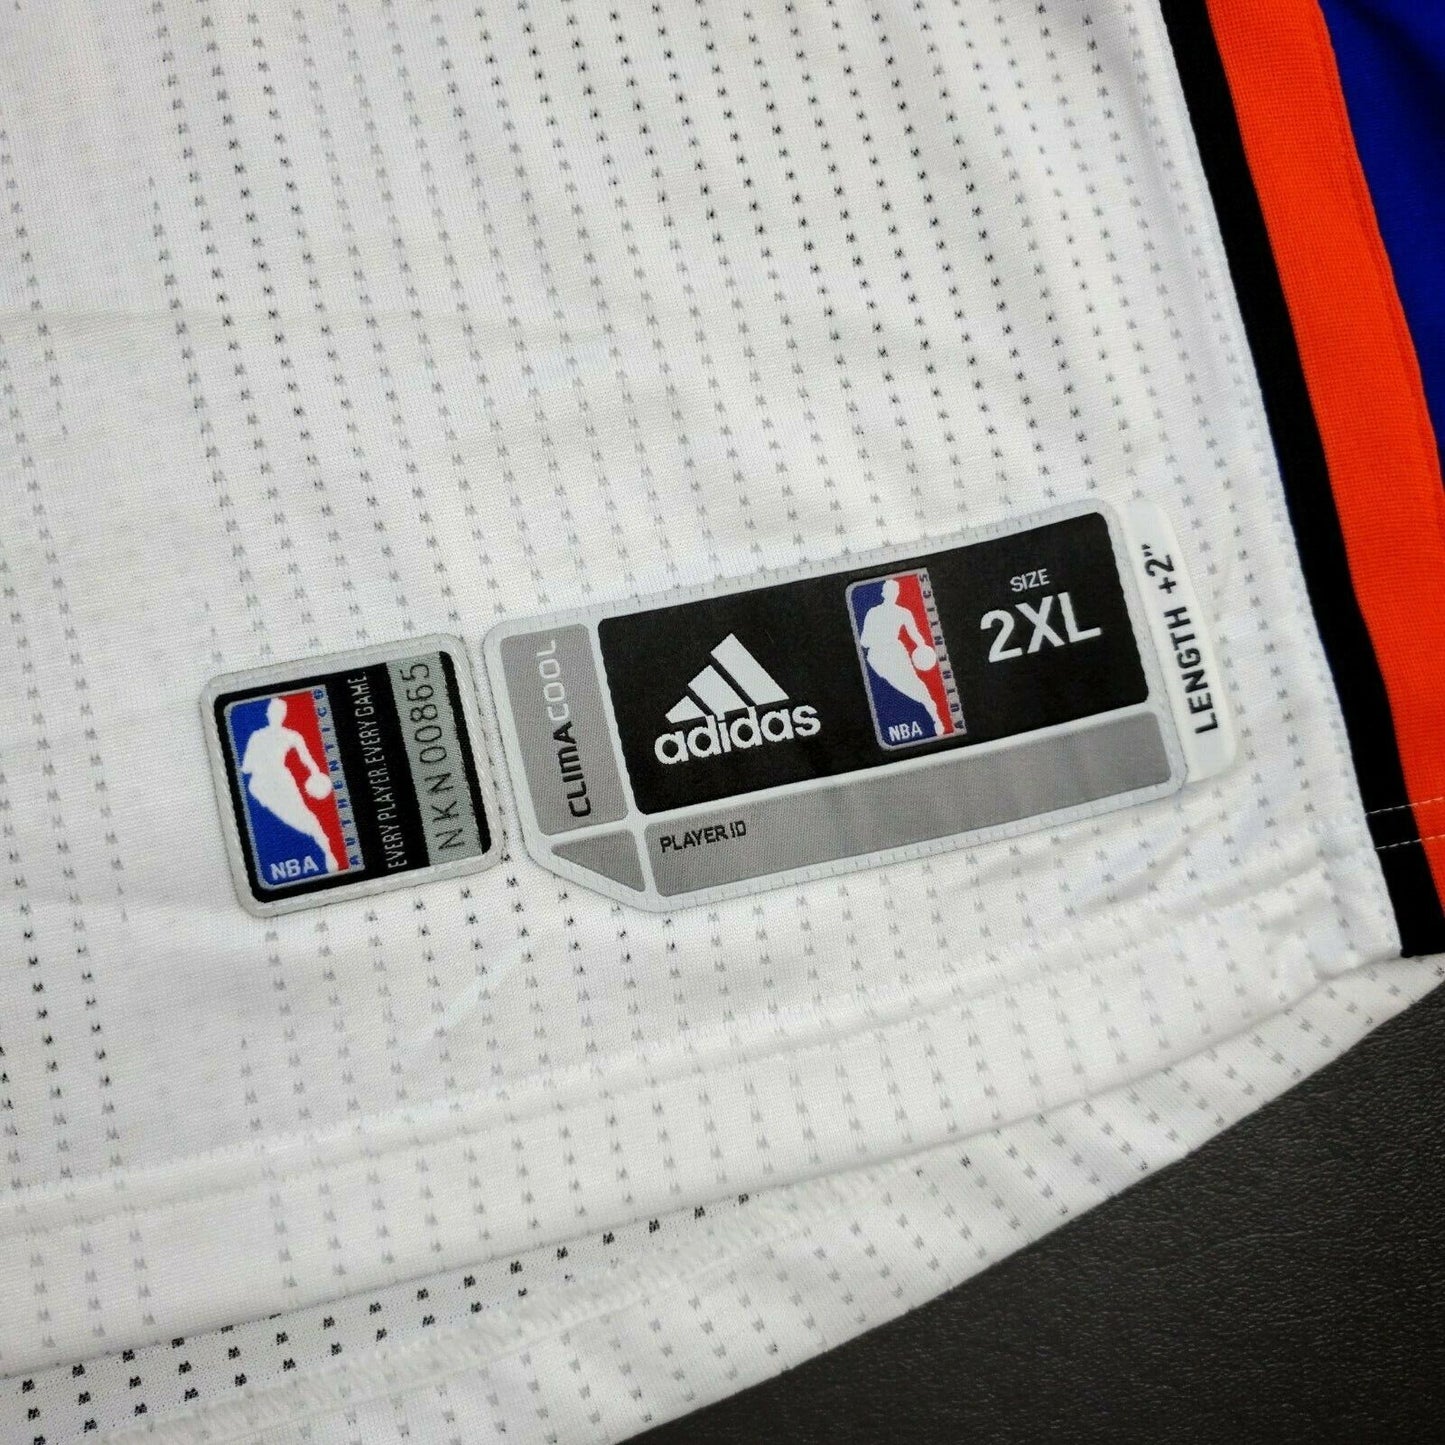 100% Authentic Jeremy Lin 2011 New York Knicks Pro Cut Jersey 2XL+2"